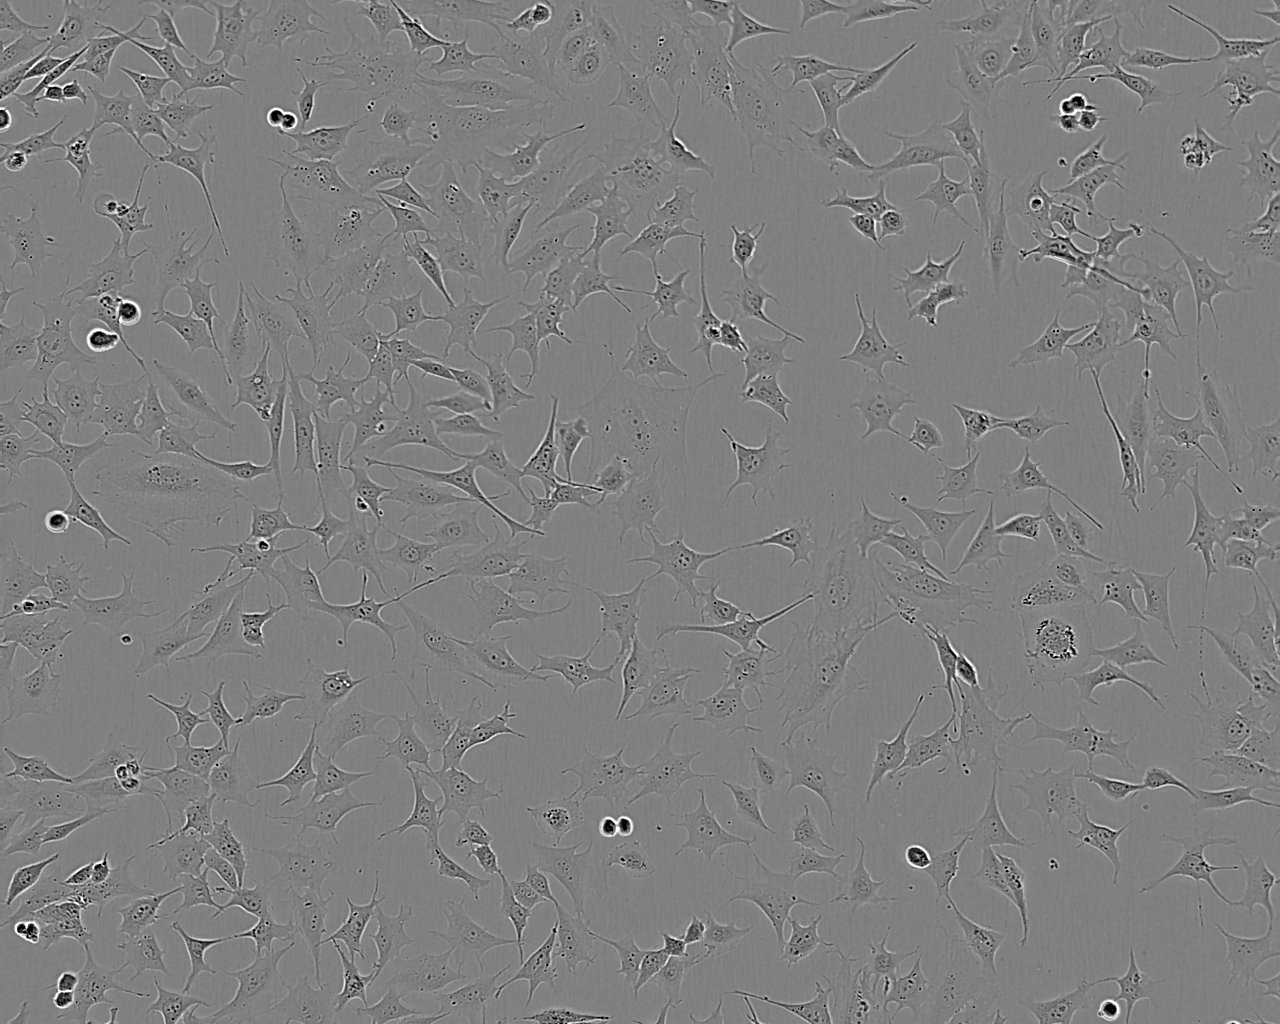 MV4-11 Cell|人急性单核细胞